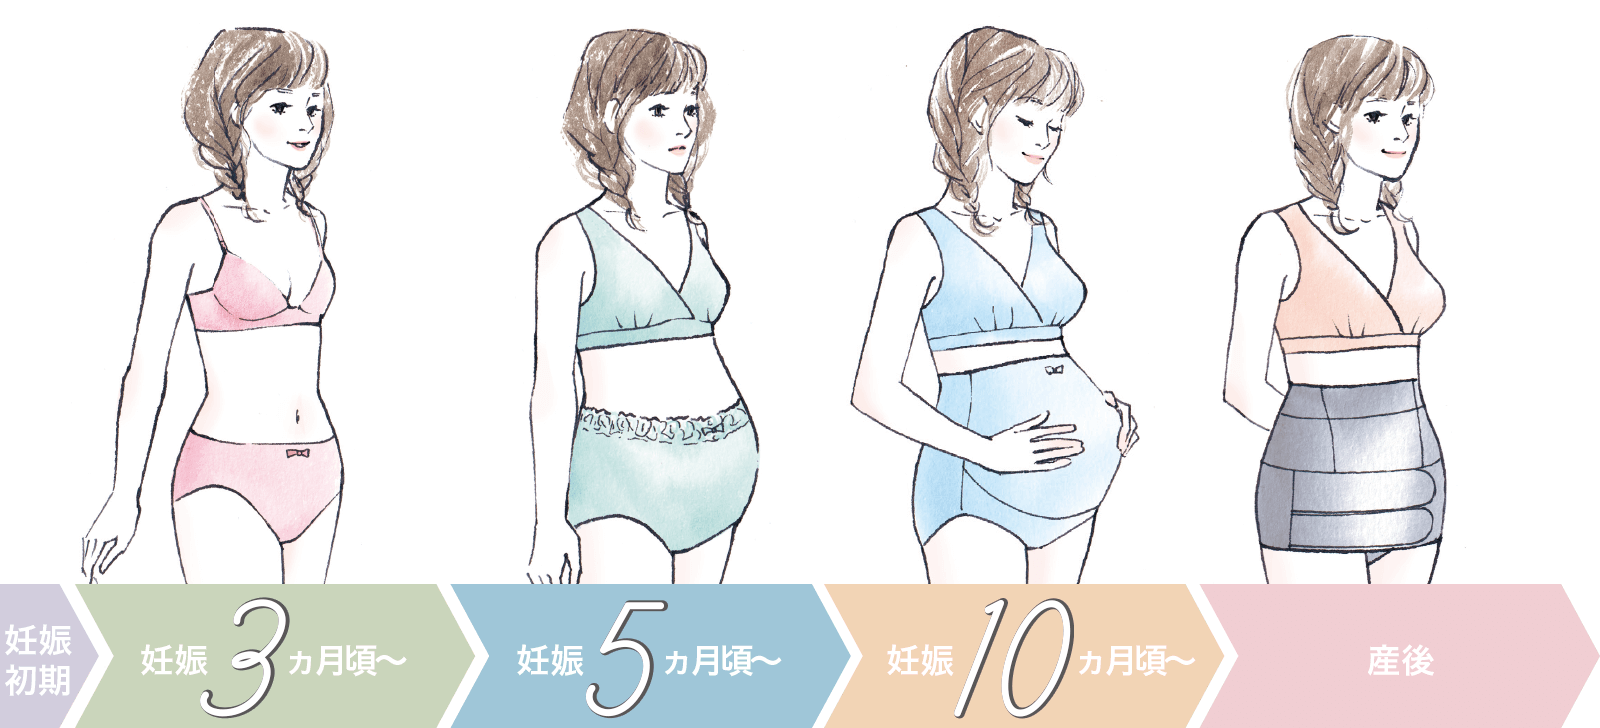 妊娠初期 , 妊娠3ヵ月頃〜 , 妊娠5ヵ月頃〜 , 妊娠10ヵ月頃〜 , 産後